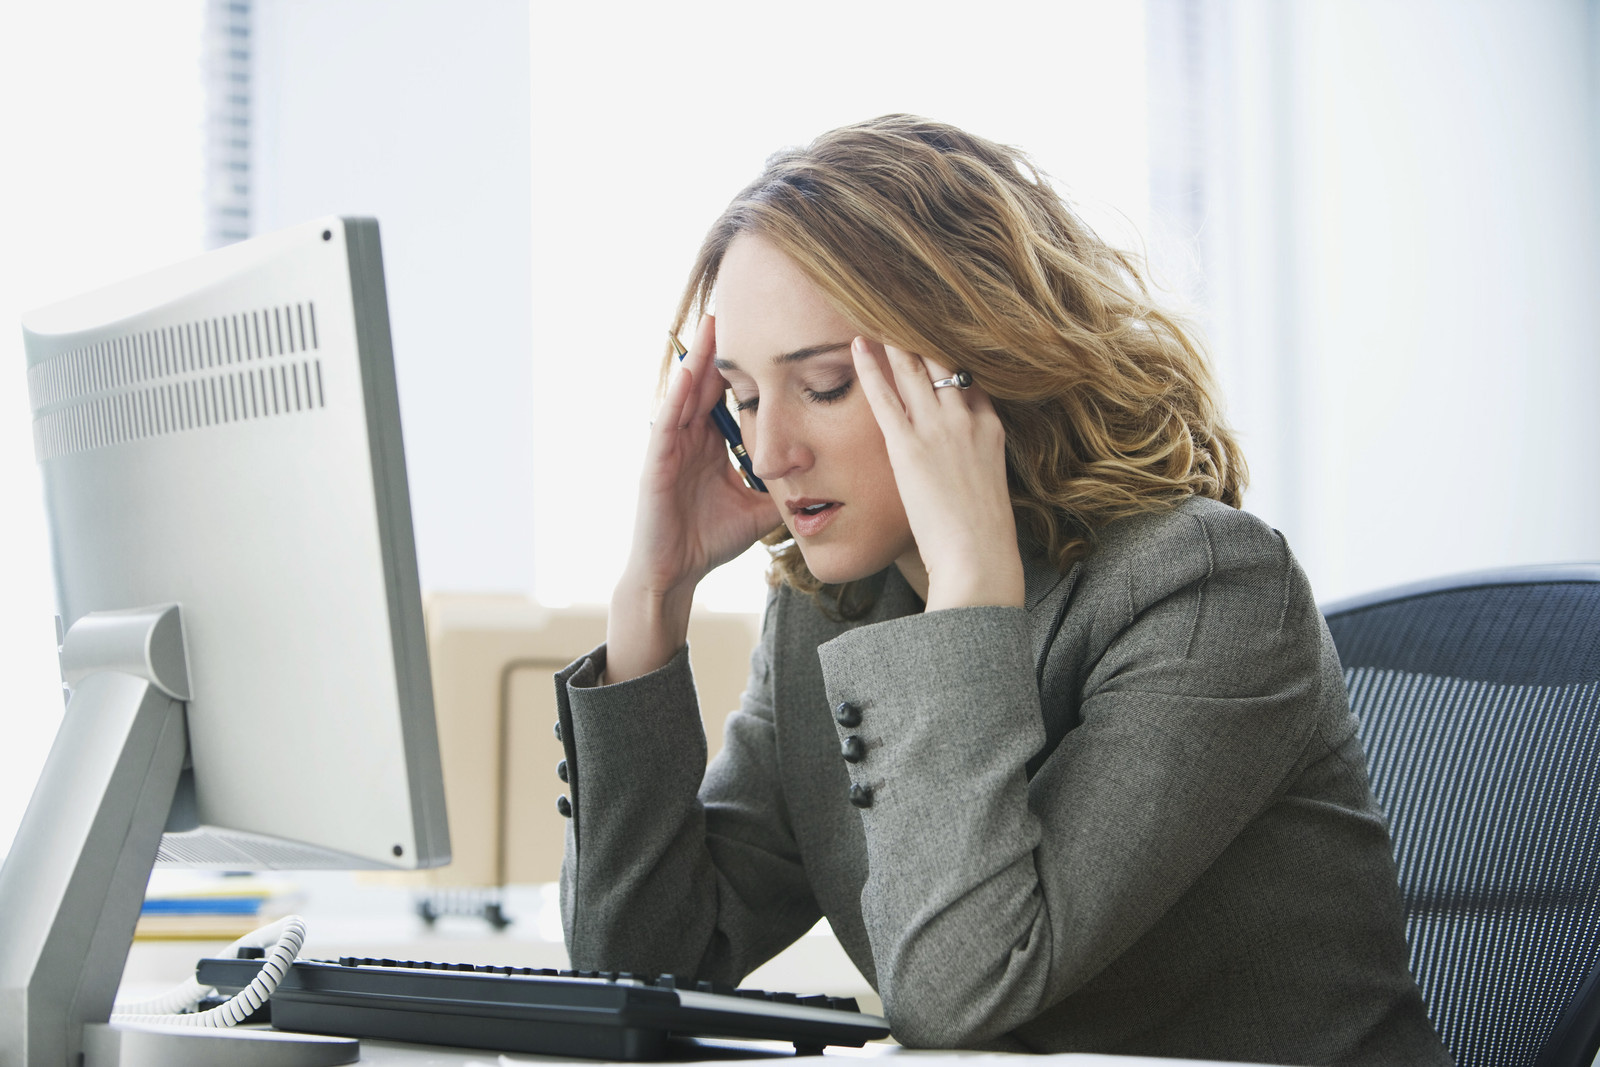 4 أعراض لوقوعك تحت التوتر والضغط العصبي